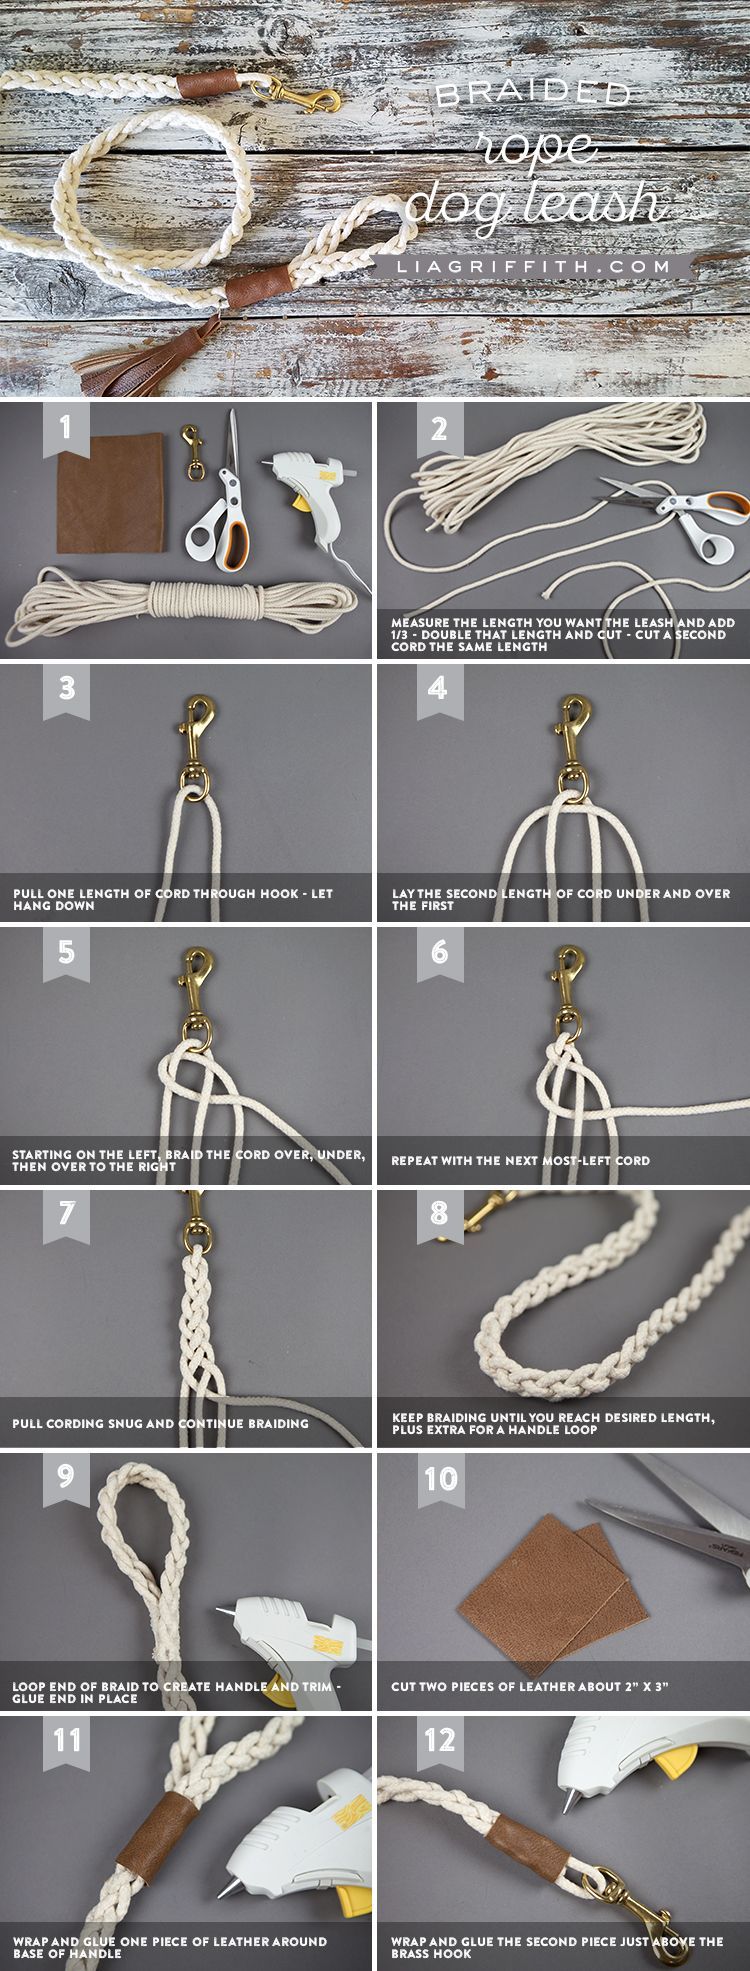 DIY Dog Leash Tutorial with Braided Rope - DIY Dog Leash Tutorial with Braided Rope -   15 dog diy Projects ideas